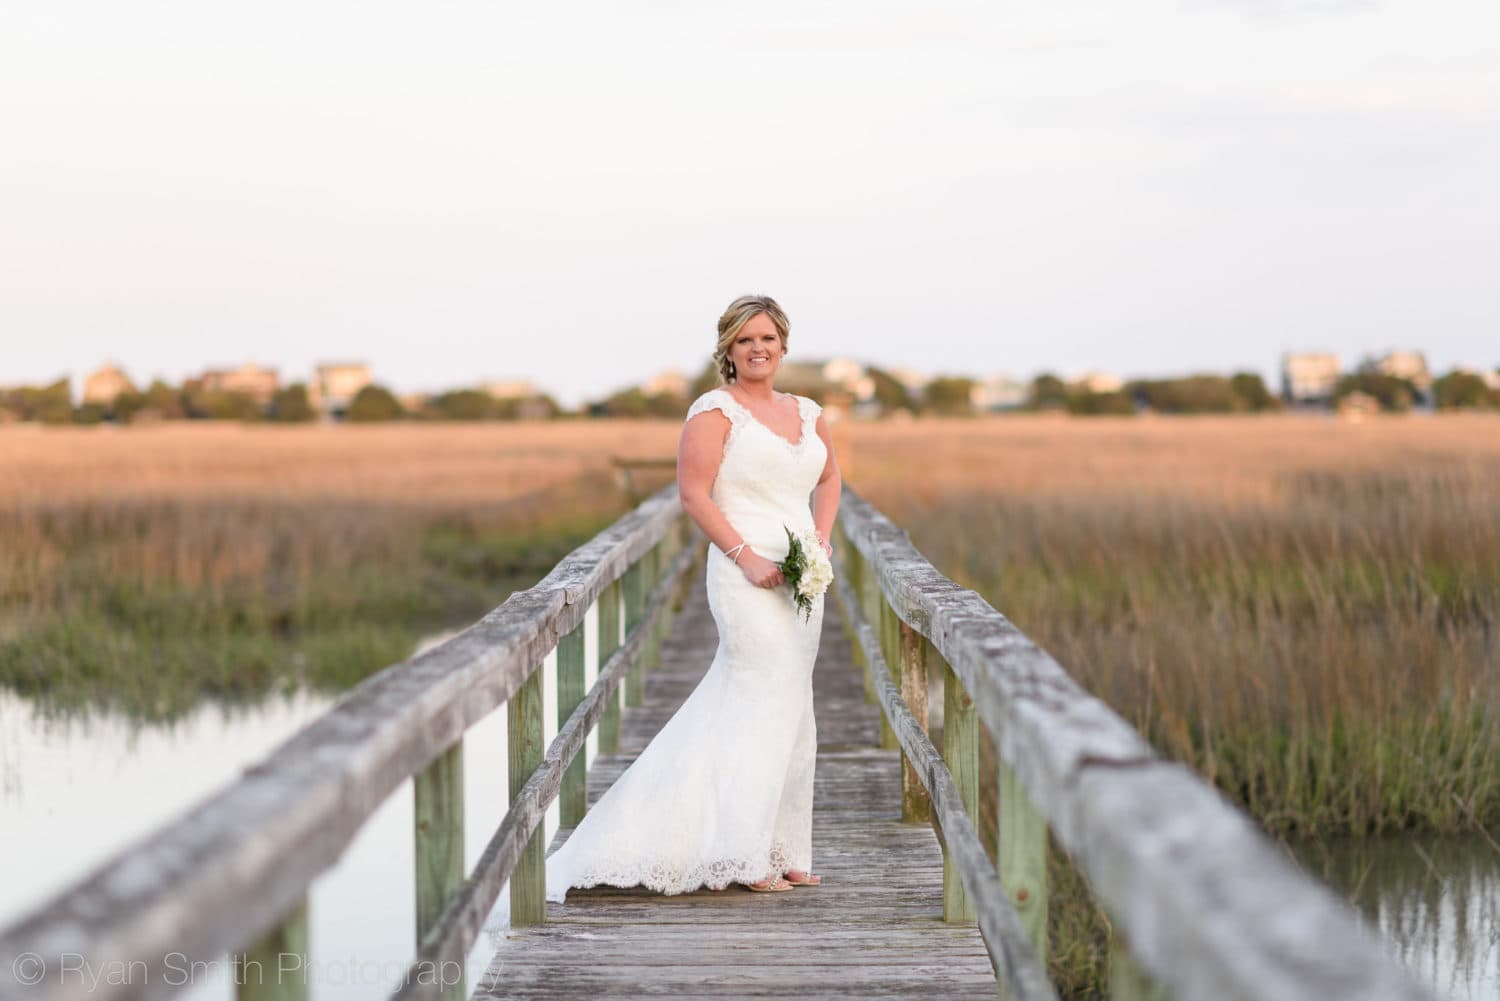 Bride posing on a boardwalk - Pawleys Island